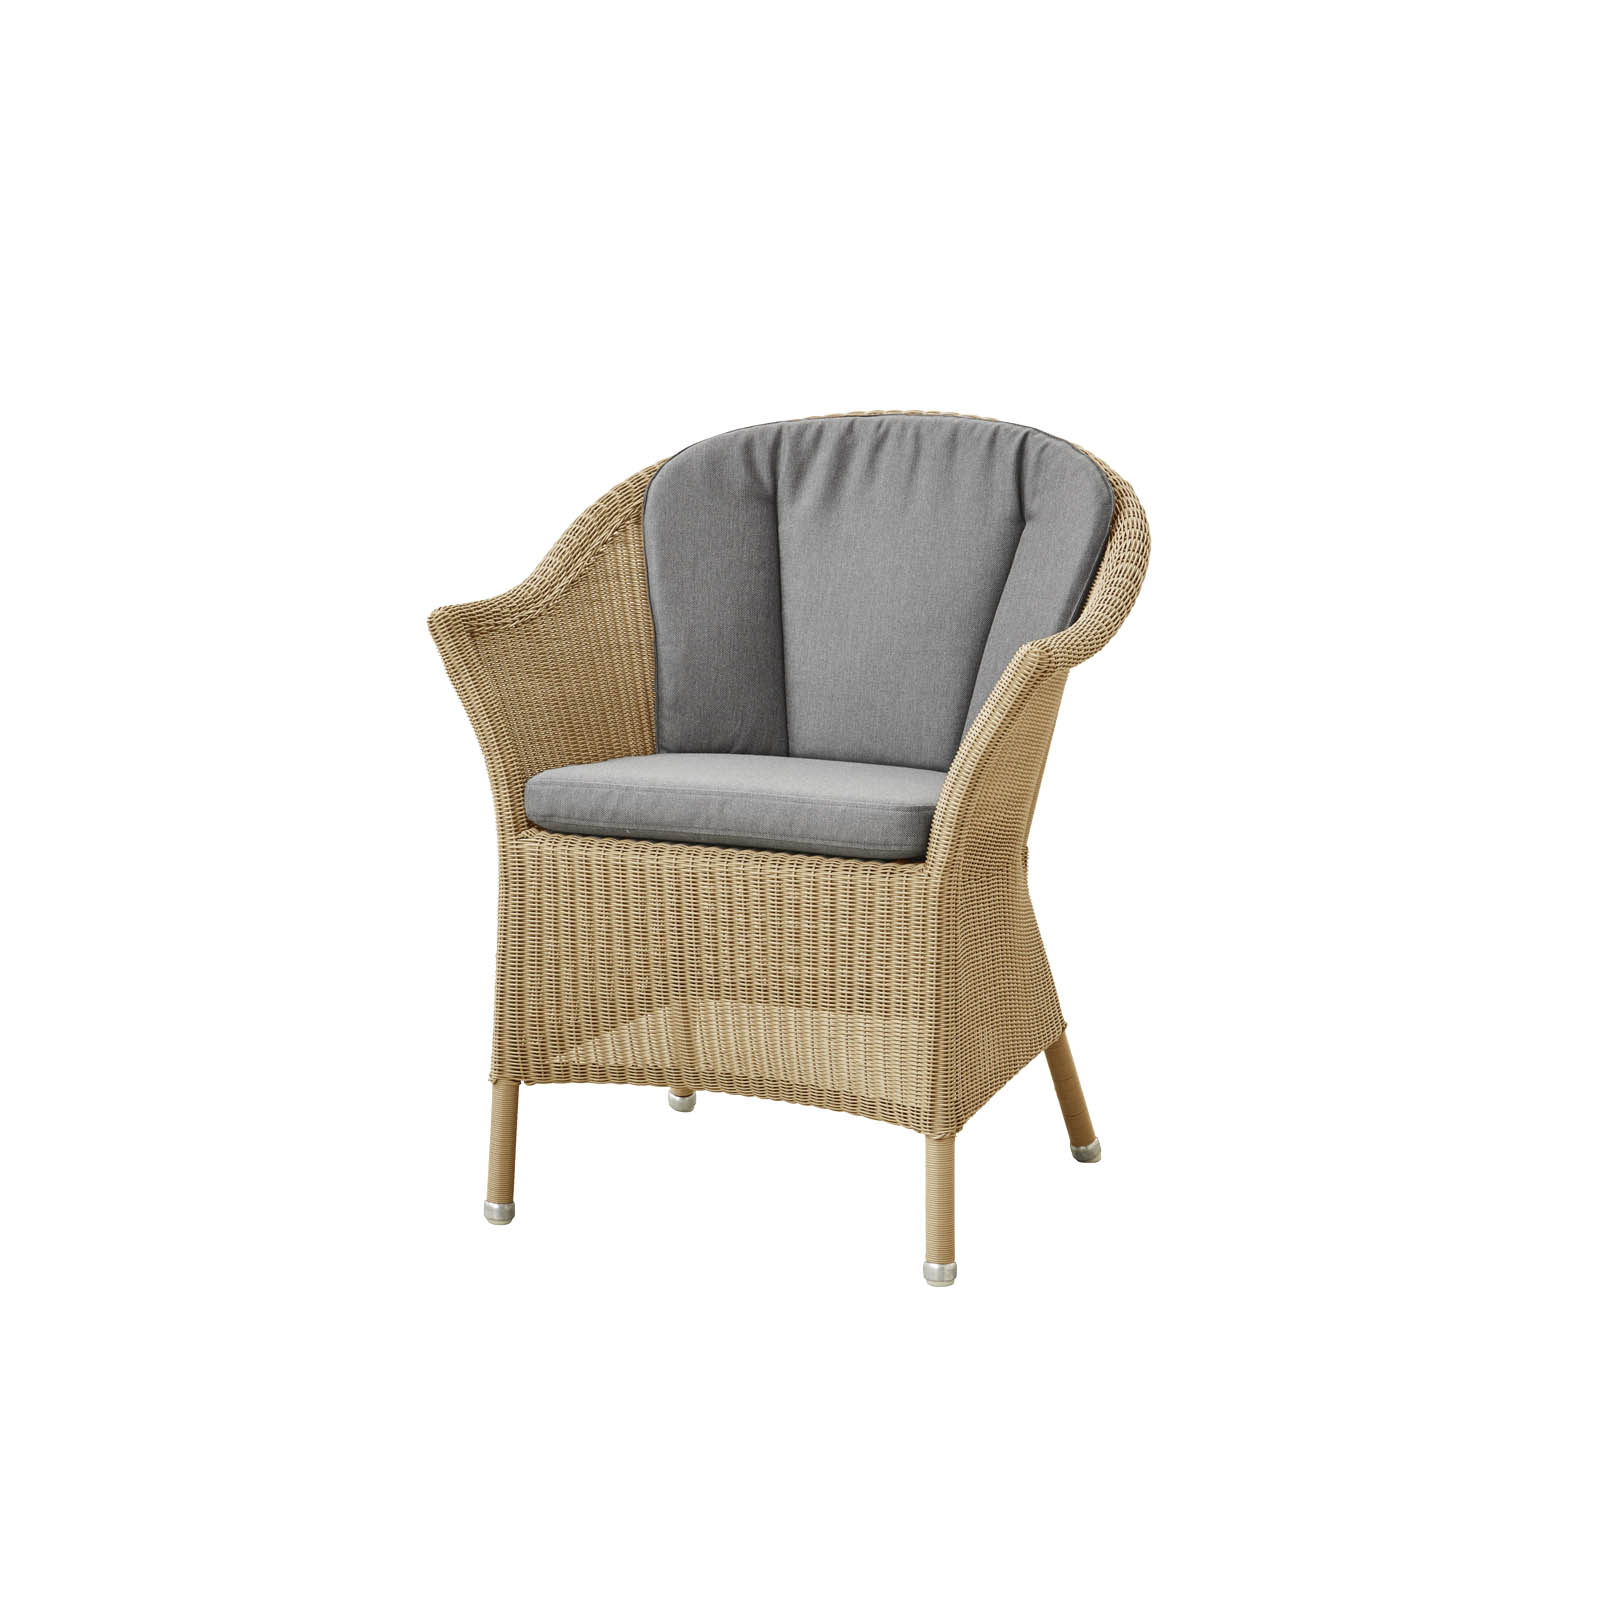 Lansing Stuhl aus Cane-line Weave in Natural mit Kissen aus Cane-line Natté in Grey und Kissen aus Cane-line Natté in Grey